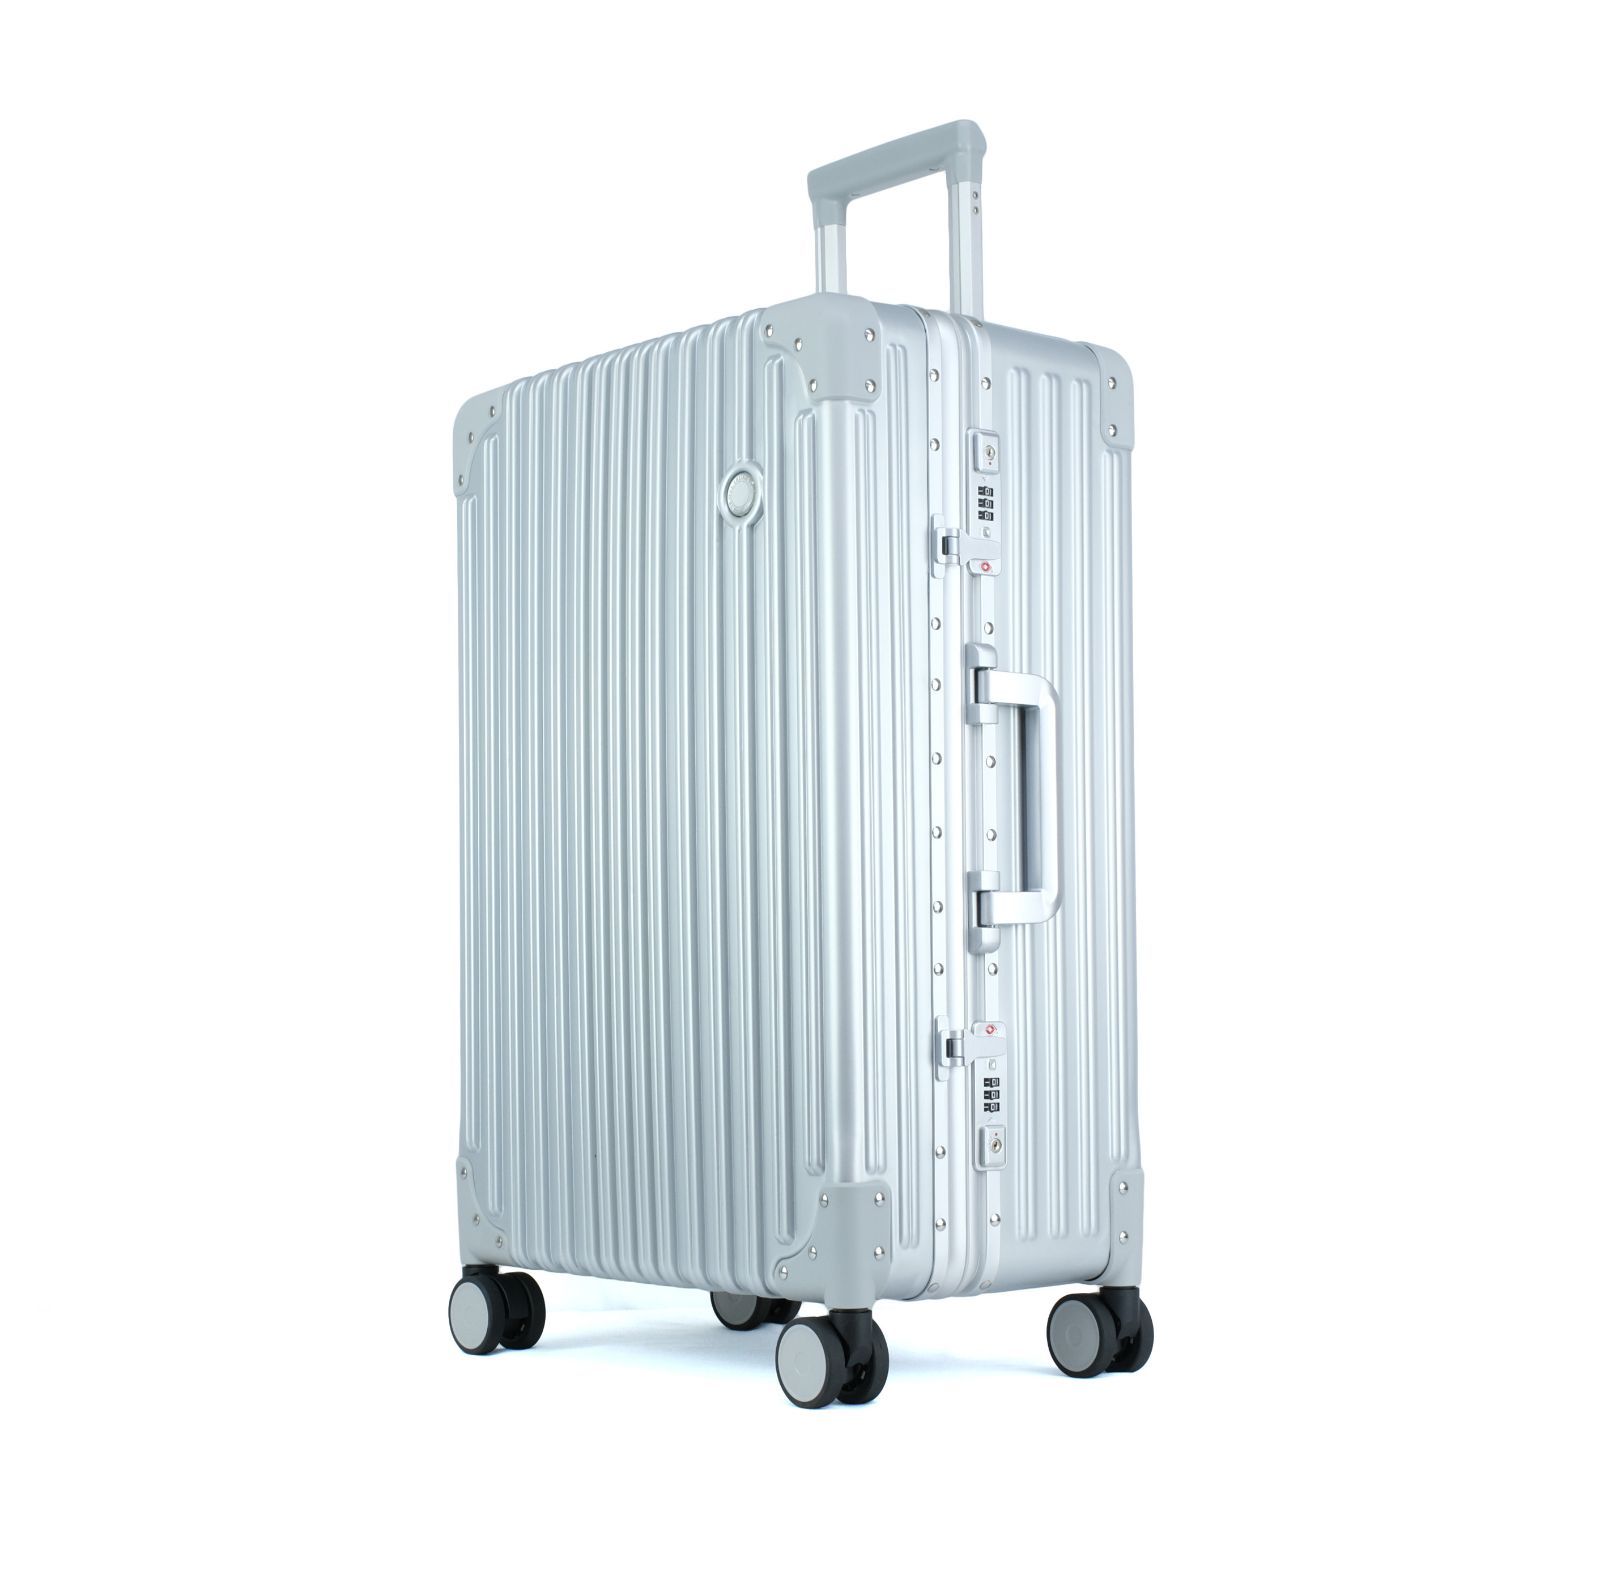 [TRUNKTRAVEL] スーツケース キャリーバッグ Mサイズ シルバー アルミフレーム TSAロック 軽量 キャリーケース スーツ ケース  (M(5~7泊) 24インチ, シルバー)